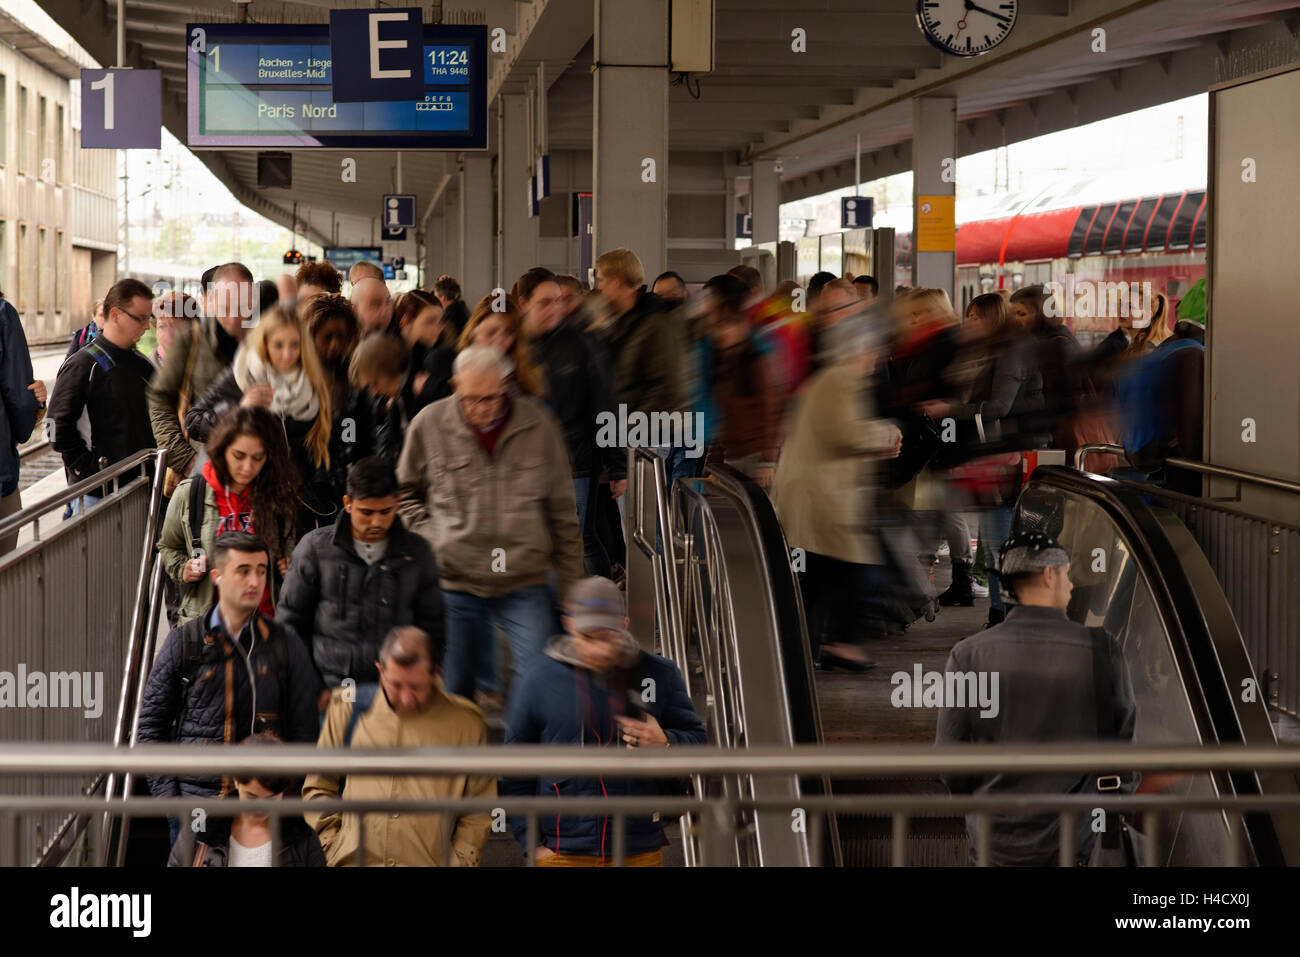 Essen Hauptbahnhof liegt, Rush Hour, berufliche Ton Pendlerverkehr, Essen, Ruhr Gebiet, North Rhine-Westphalia, Germany, Europe Stockfoto